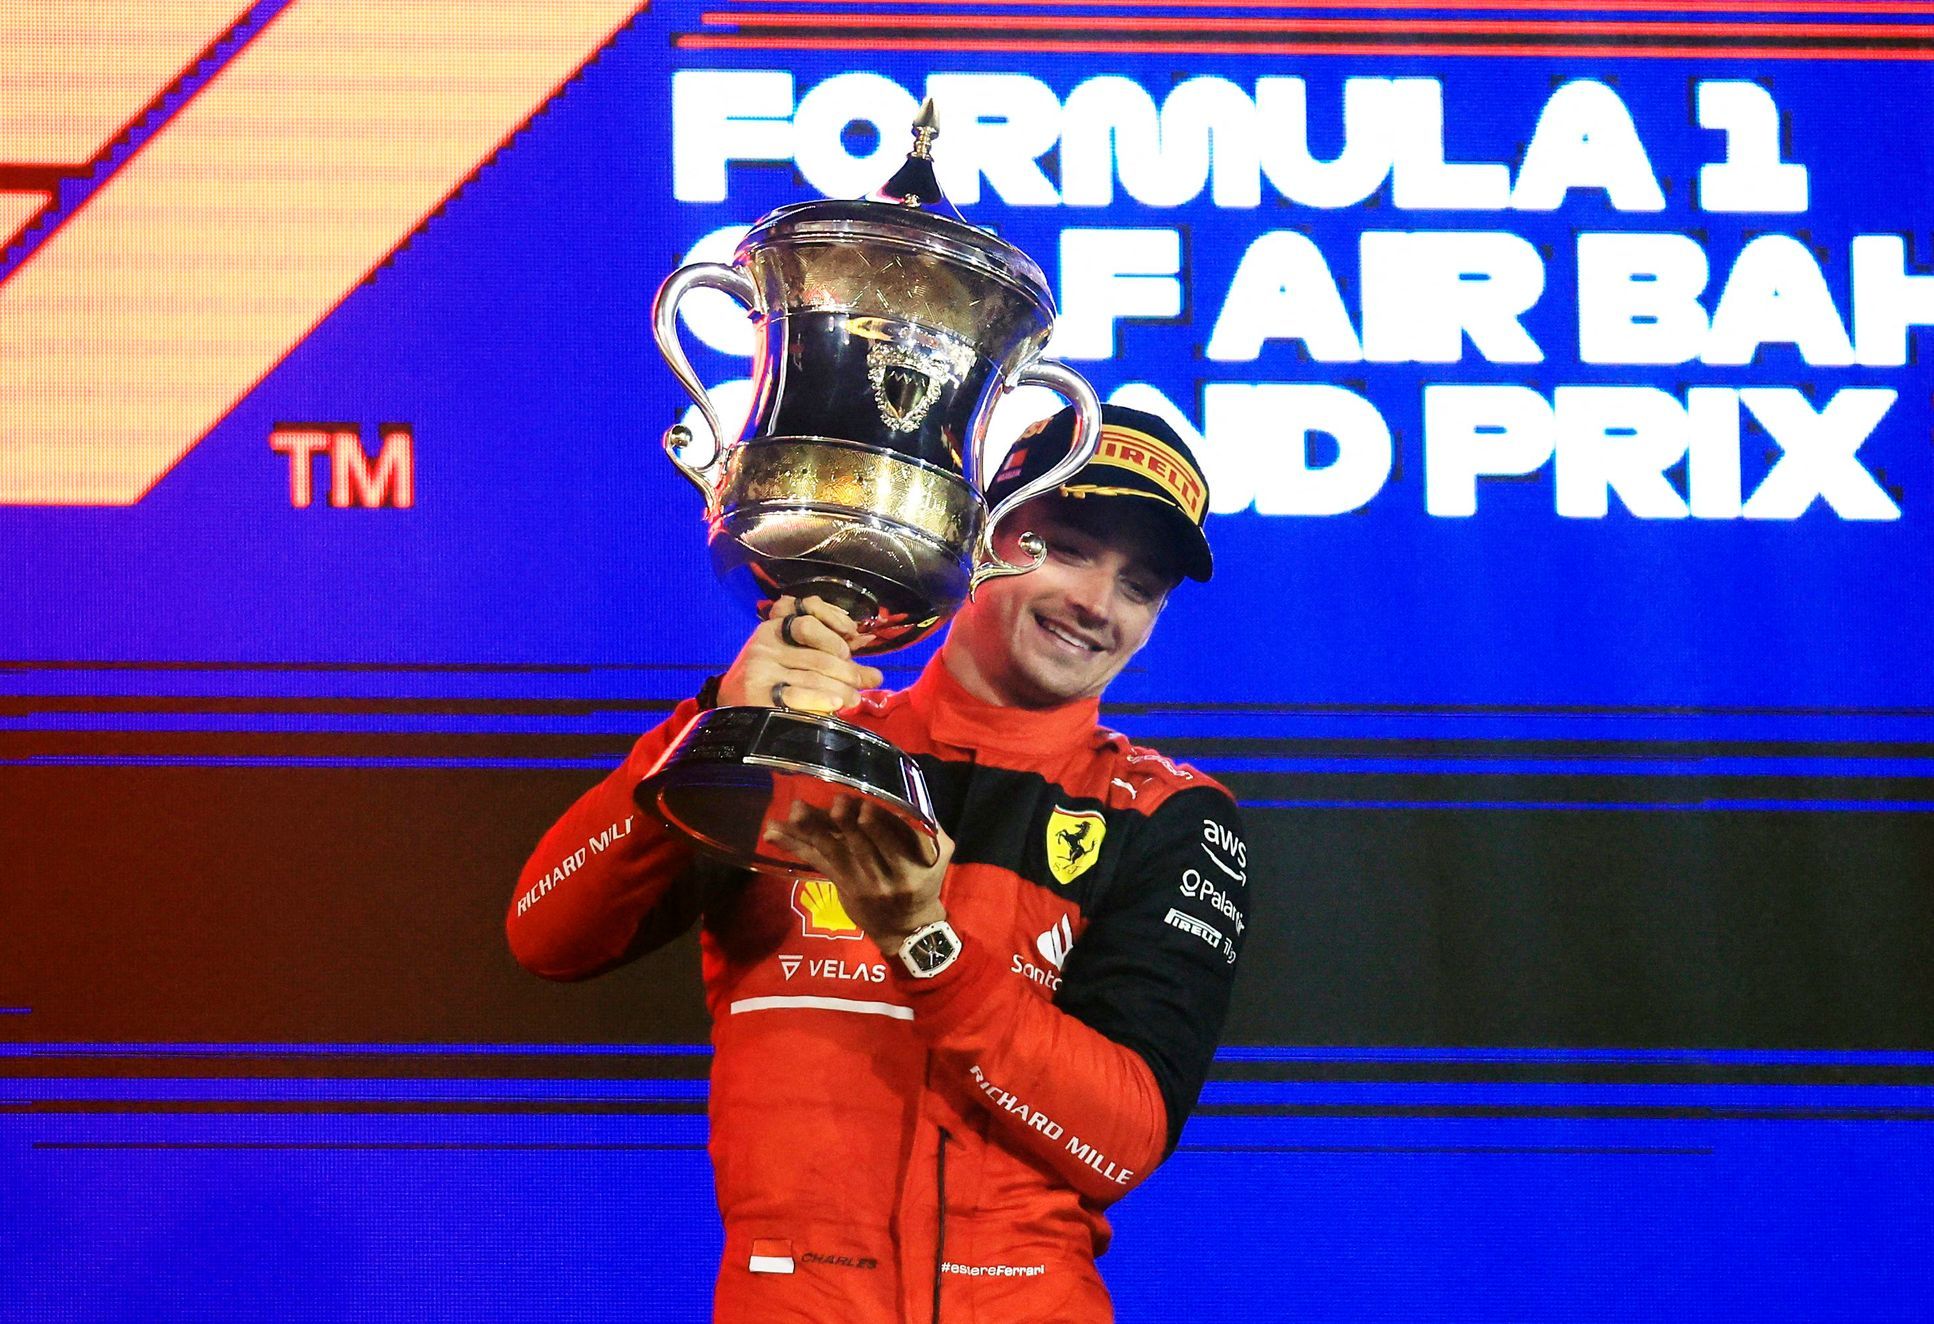 Fine dell’attesa per la vittoria della Ferrari in F1.  Leclerc vince in Bahrain dopo 910 giorni